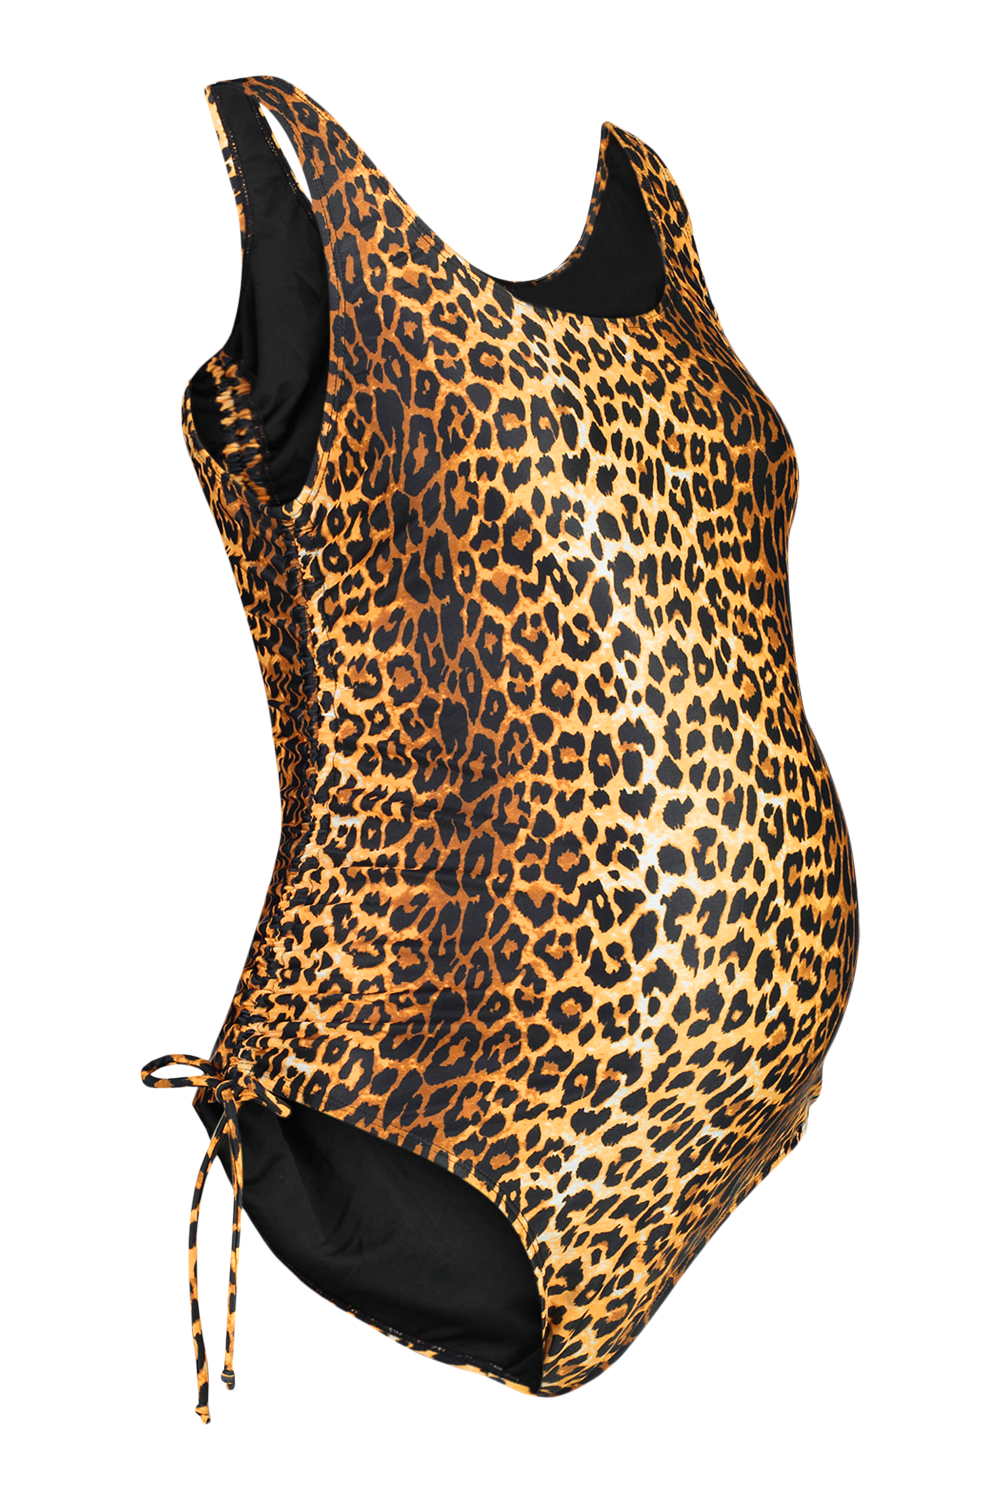 Leopard Maternity Swimsuit – Cozy Nursery